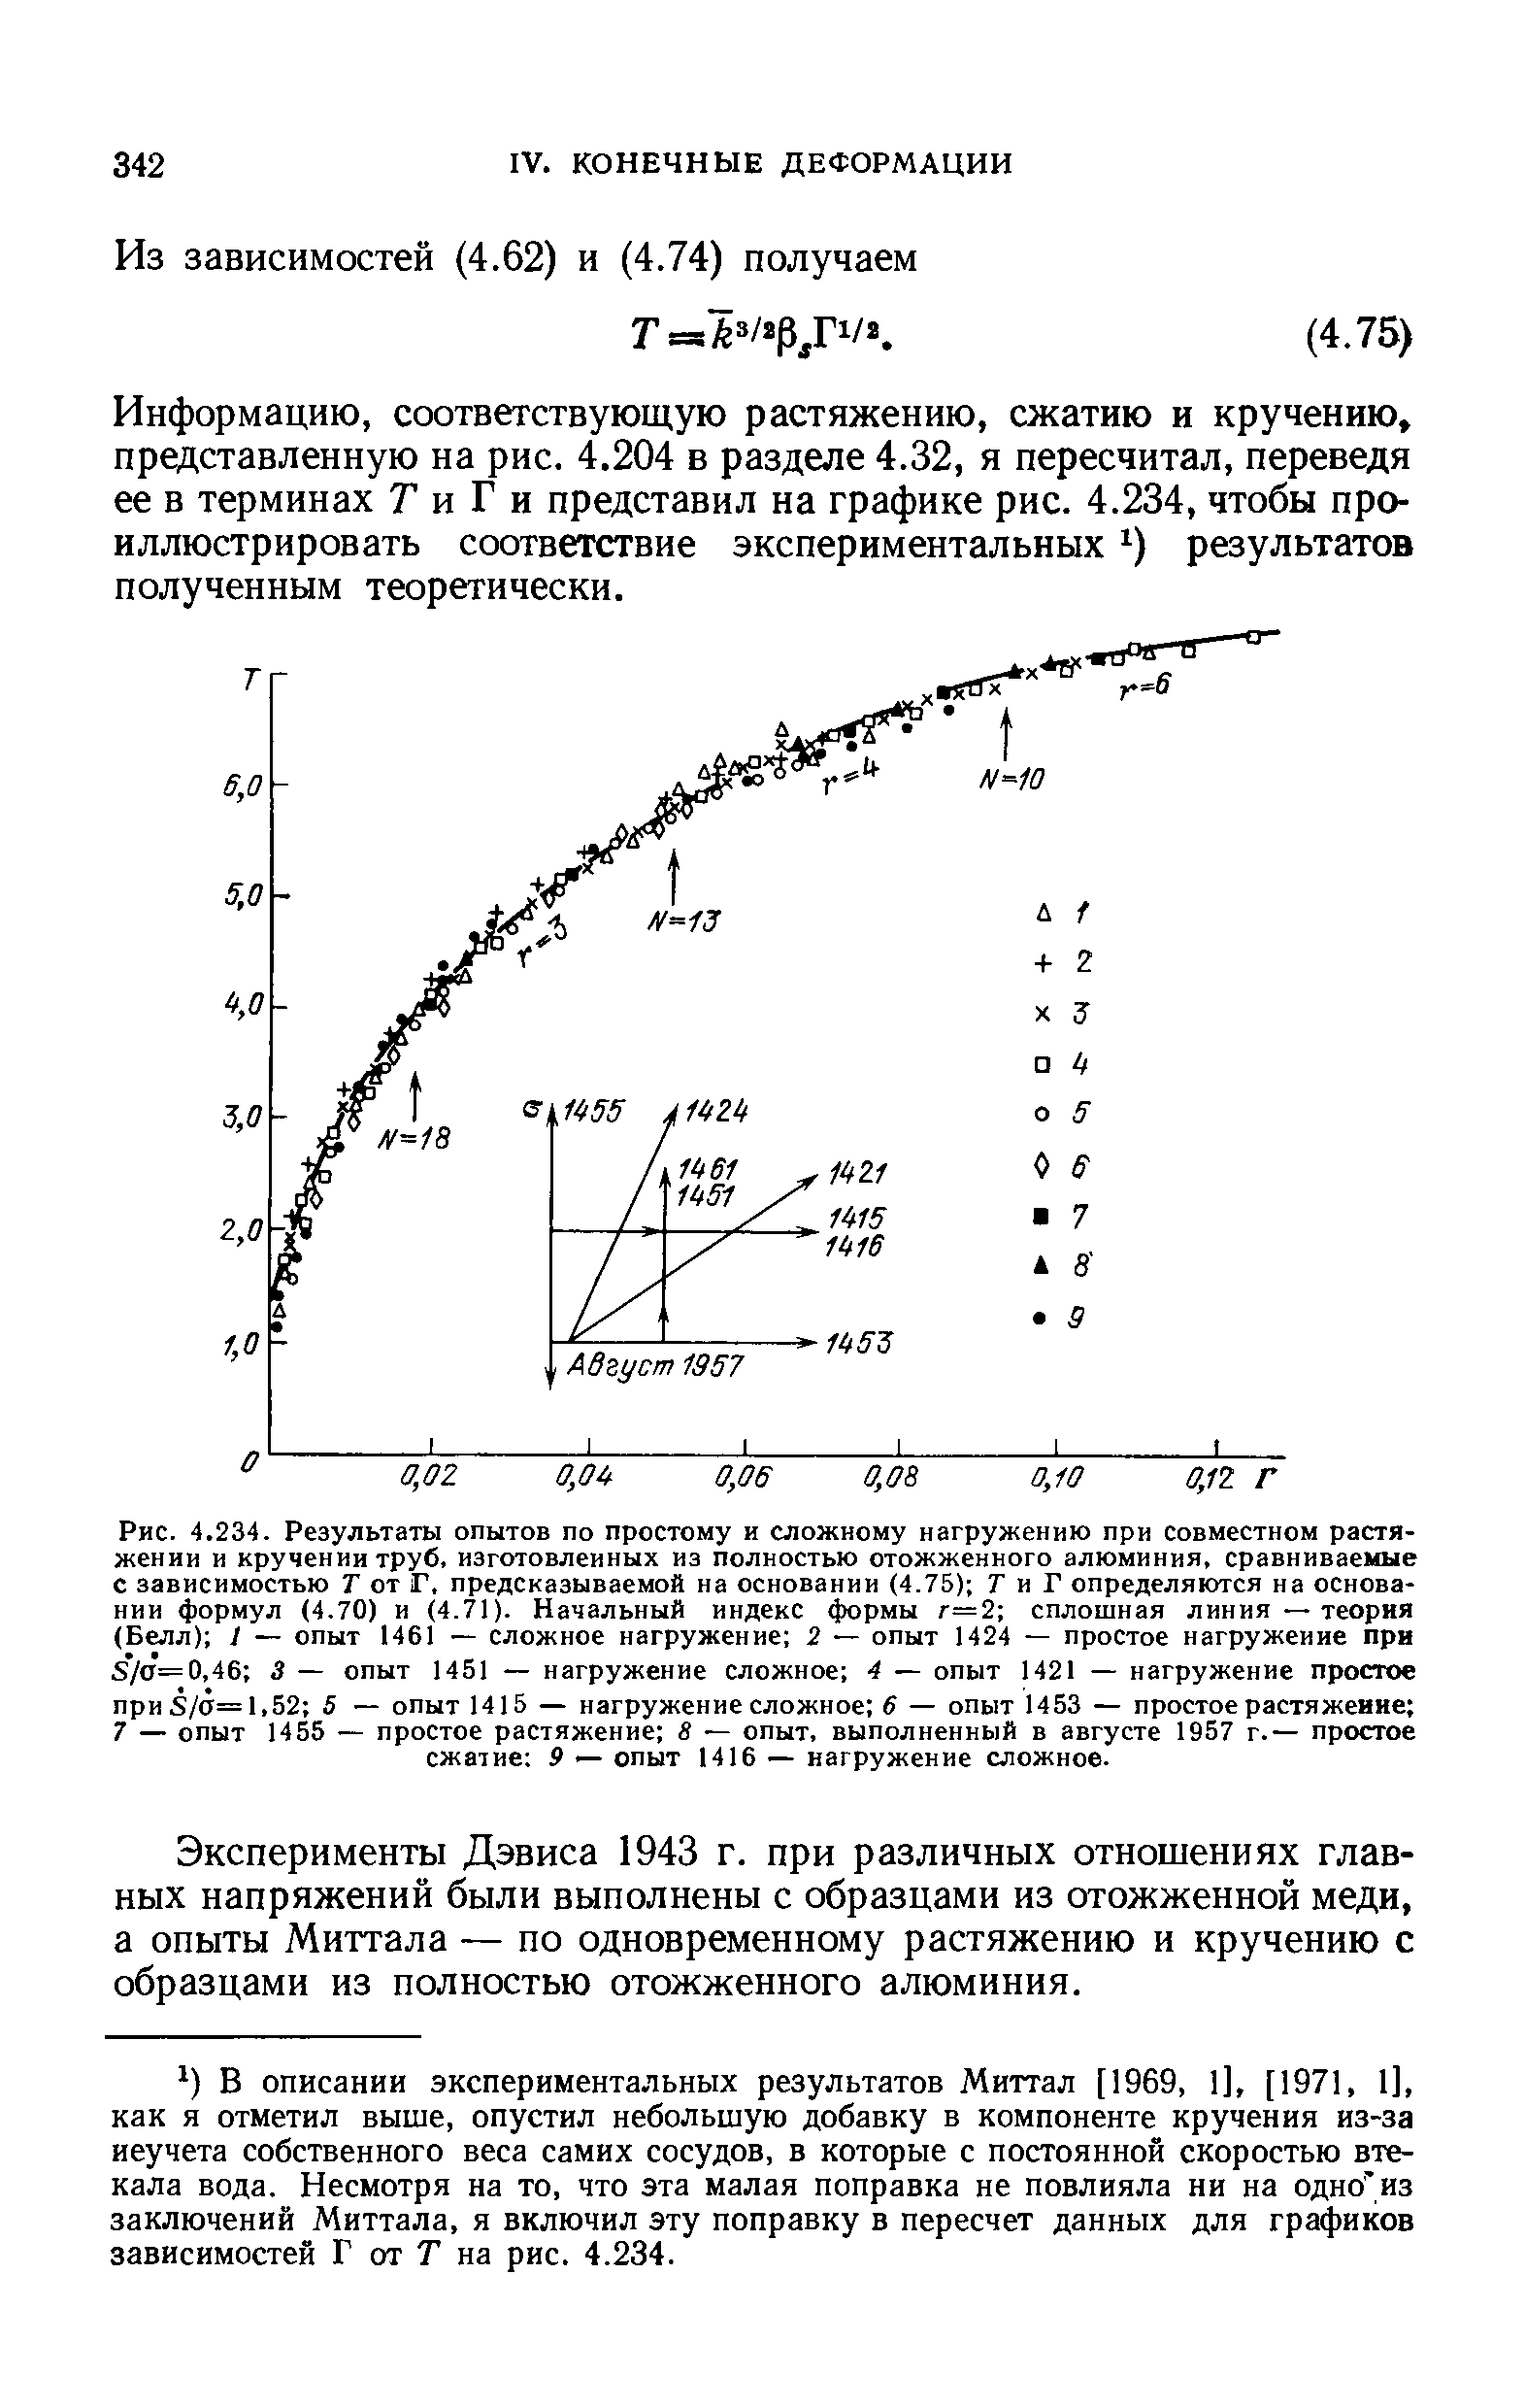 Рис. 4.234. Результаты опытов по простому и сложному нагружению при совместном растяжении и <a href="/info/247900">кручении труб</a>, изготовленных из полностью отожженного алюминия, сравниваемые с зависимостью Т от Г, предсказываемой на основании (4.75) 7 и Г определяются на основании формул (4.70) и (4.71). Начальный индекс формы г=2 <a href="/info/232485">сплошная линия</a> — теория (Белл) / — опыт 1461 — сложное нагружение 2 — опыт 1424 — <a href="/info/20410">простое нагружение</a> при s7 =0,46 3 — опыт 1451 — нагружение сложное 4 — опыт 1421 — <a href="/info/20410">нагружение простое</a> при5/а=1,52 5 — опыт 1415 — нагружение сложное б — опыт 1453 — <a href="/info/14149">простое растяжение</a> 7 — опыт 1455 — <a href="/info/14149">простое растяжение</a> 8 — опыт, выполненный в августе 1957 г.— <a href="/info/244461">простое сжатие</a> 9 — опыт 1416 — нагружение сложное.
